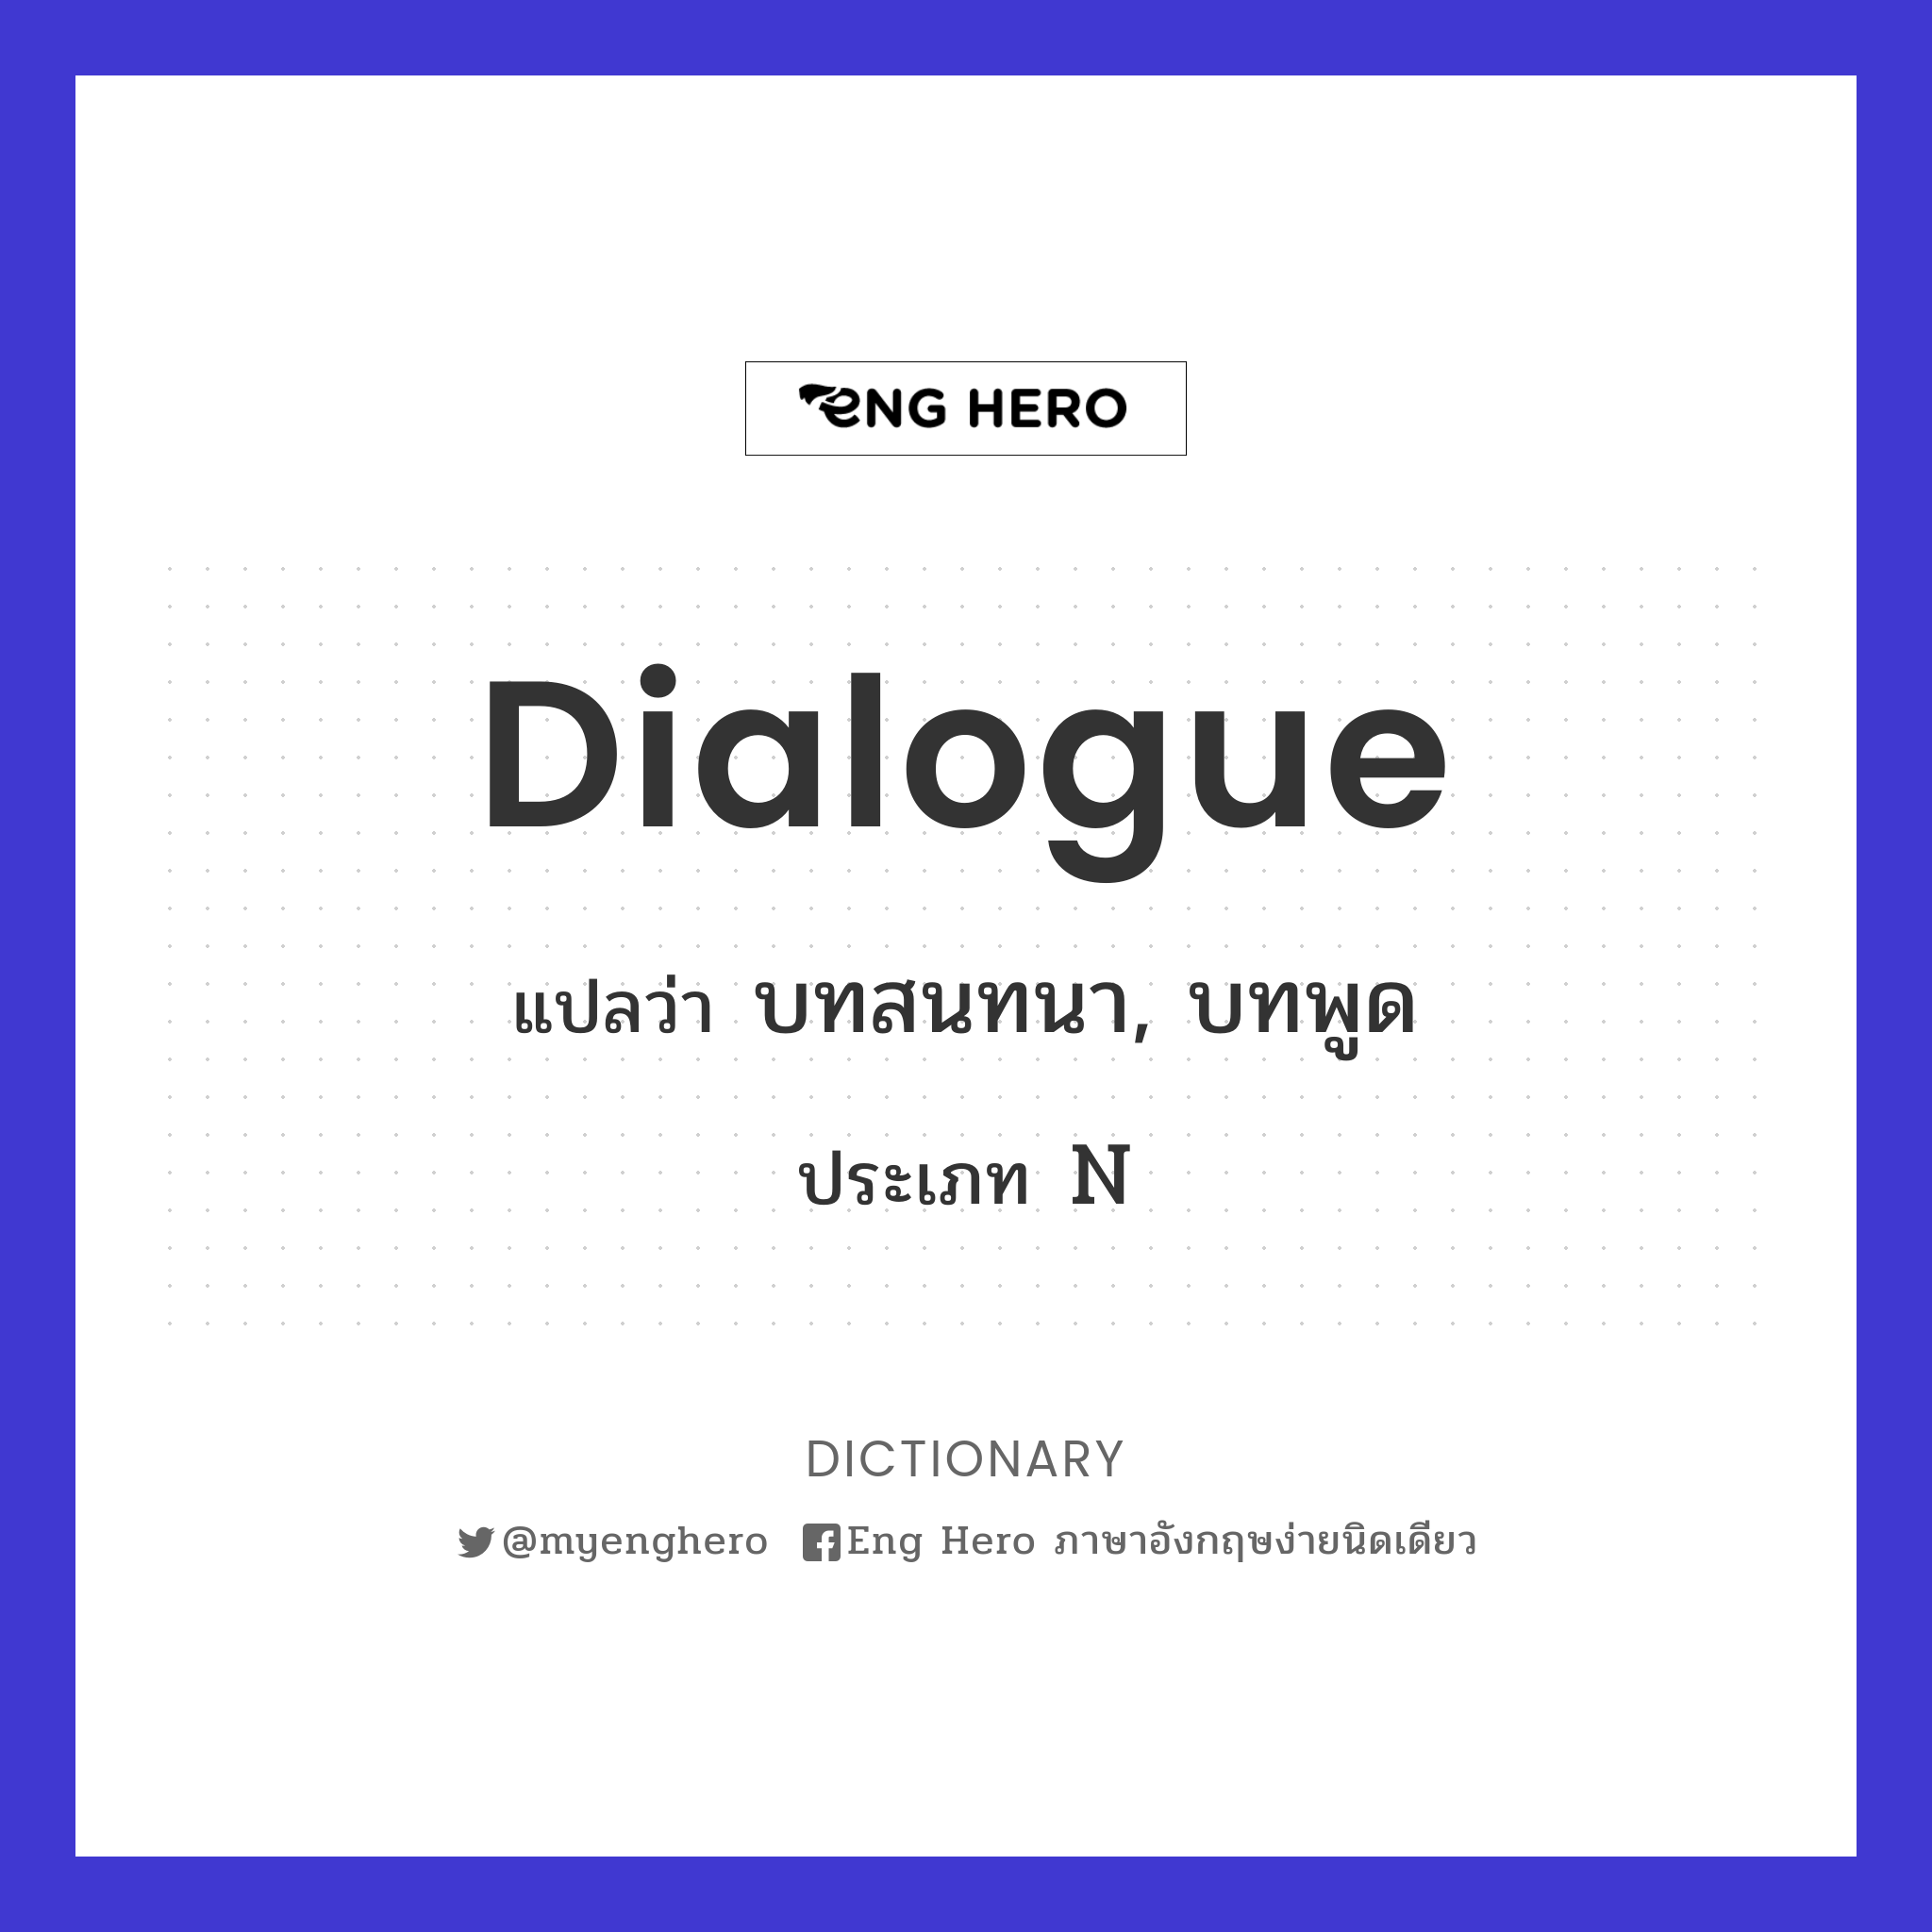 dialogue